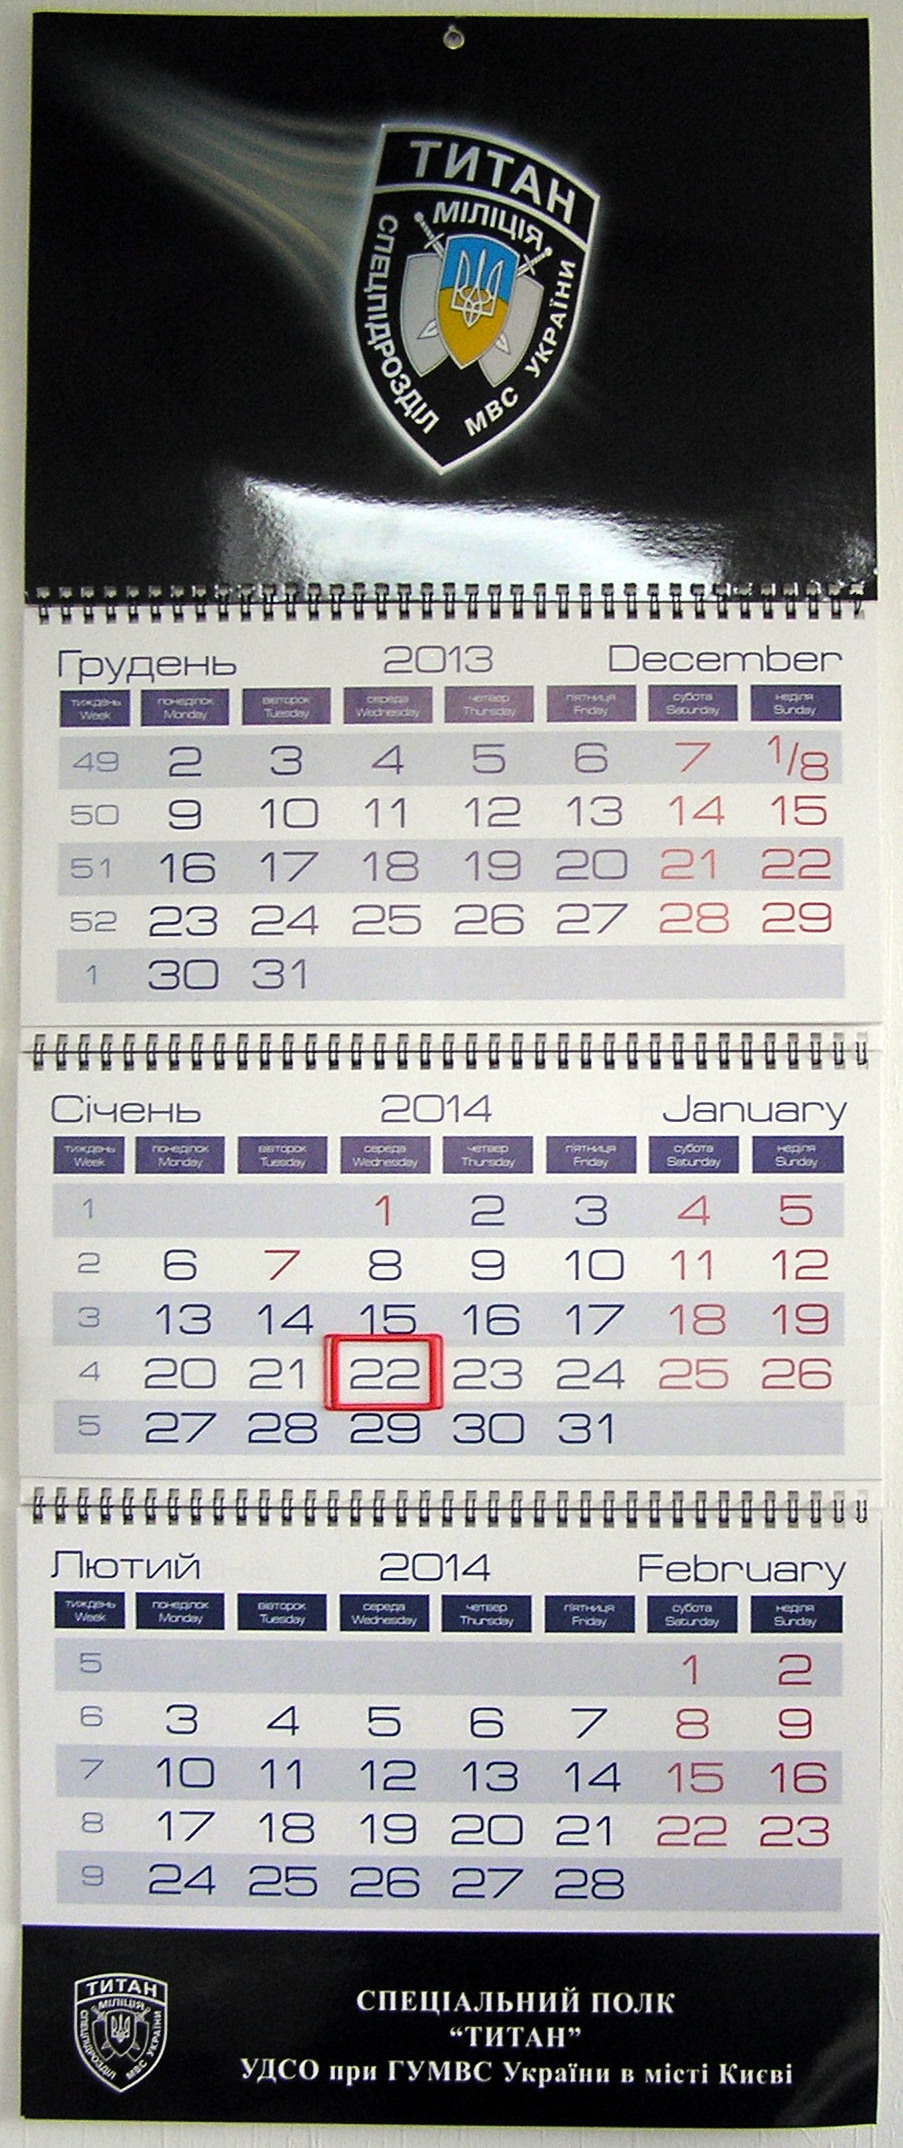 Друк квартальних календарів «Титан». Поліграфія друкарні Макрос, виготовлення квартальних календарів, спецификация 966994-1